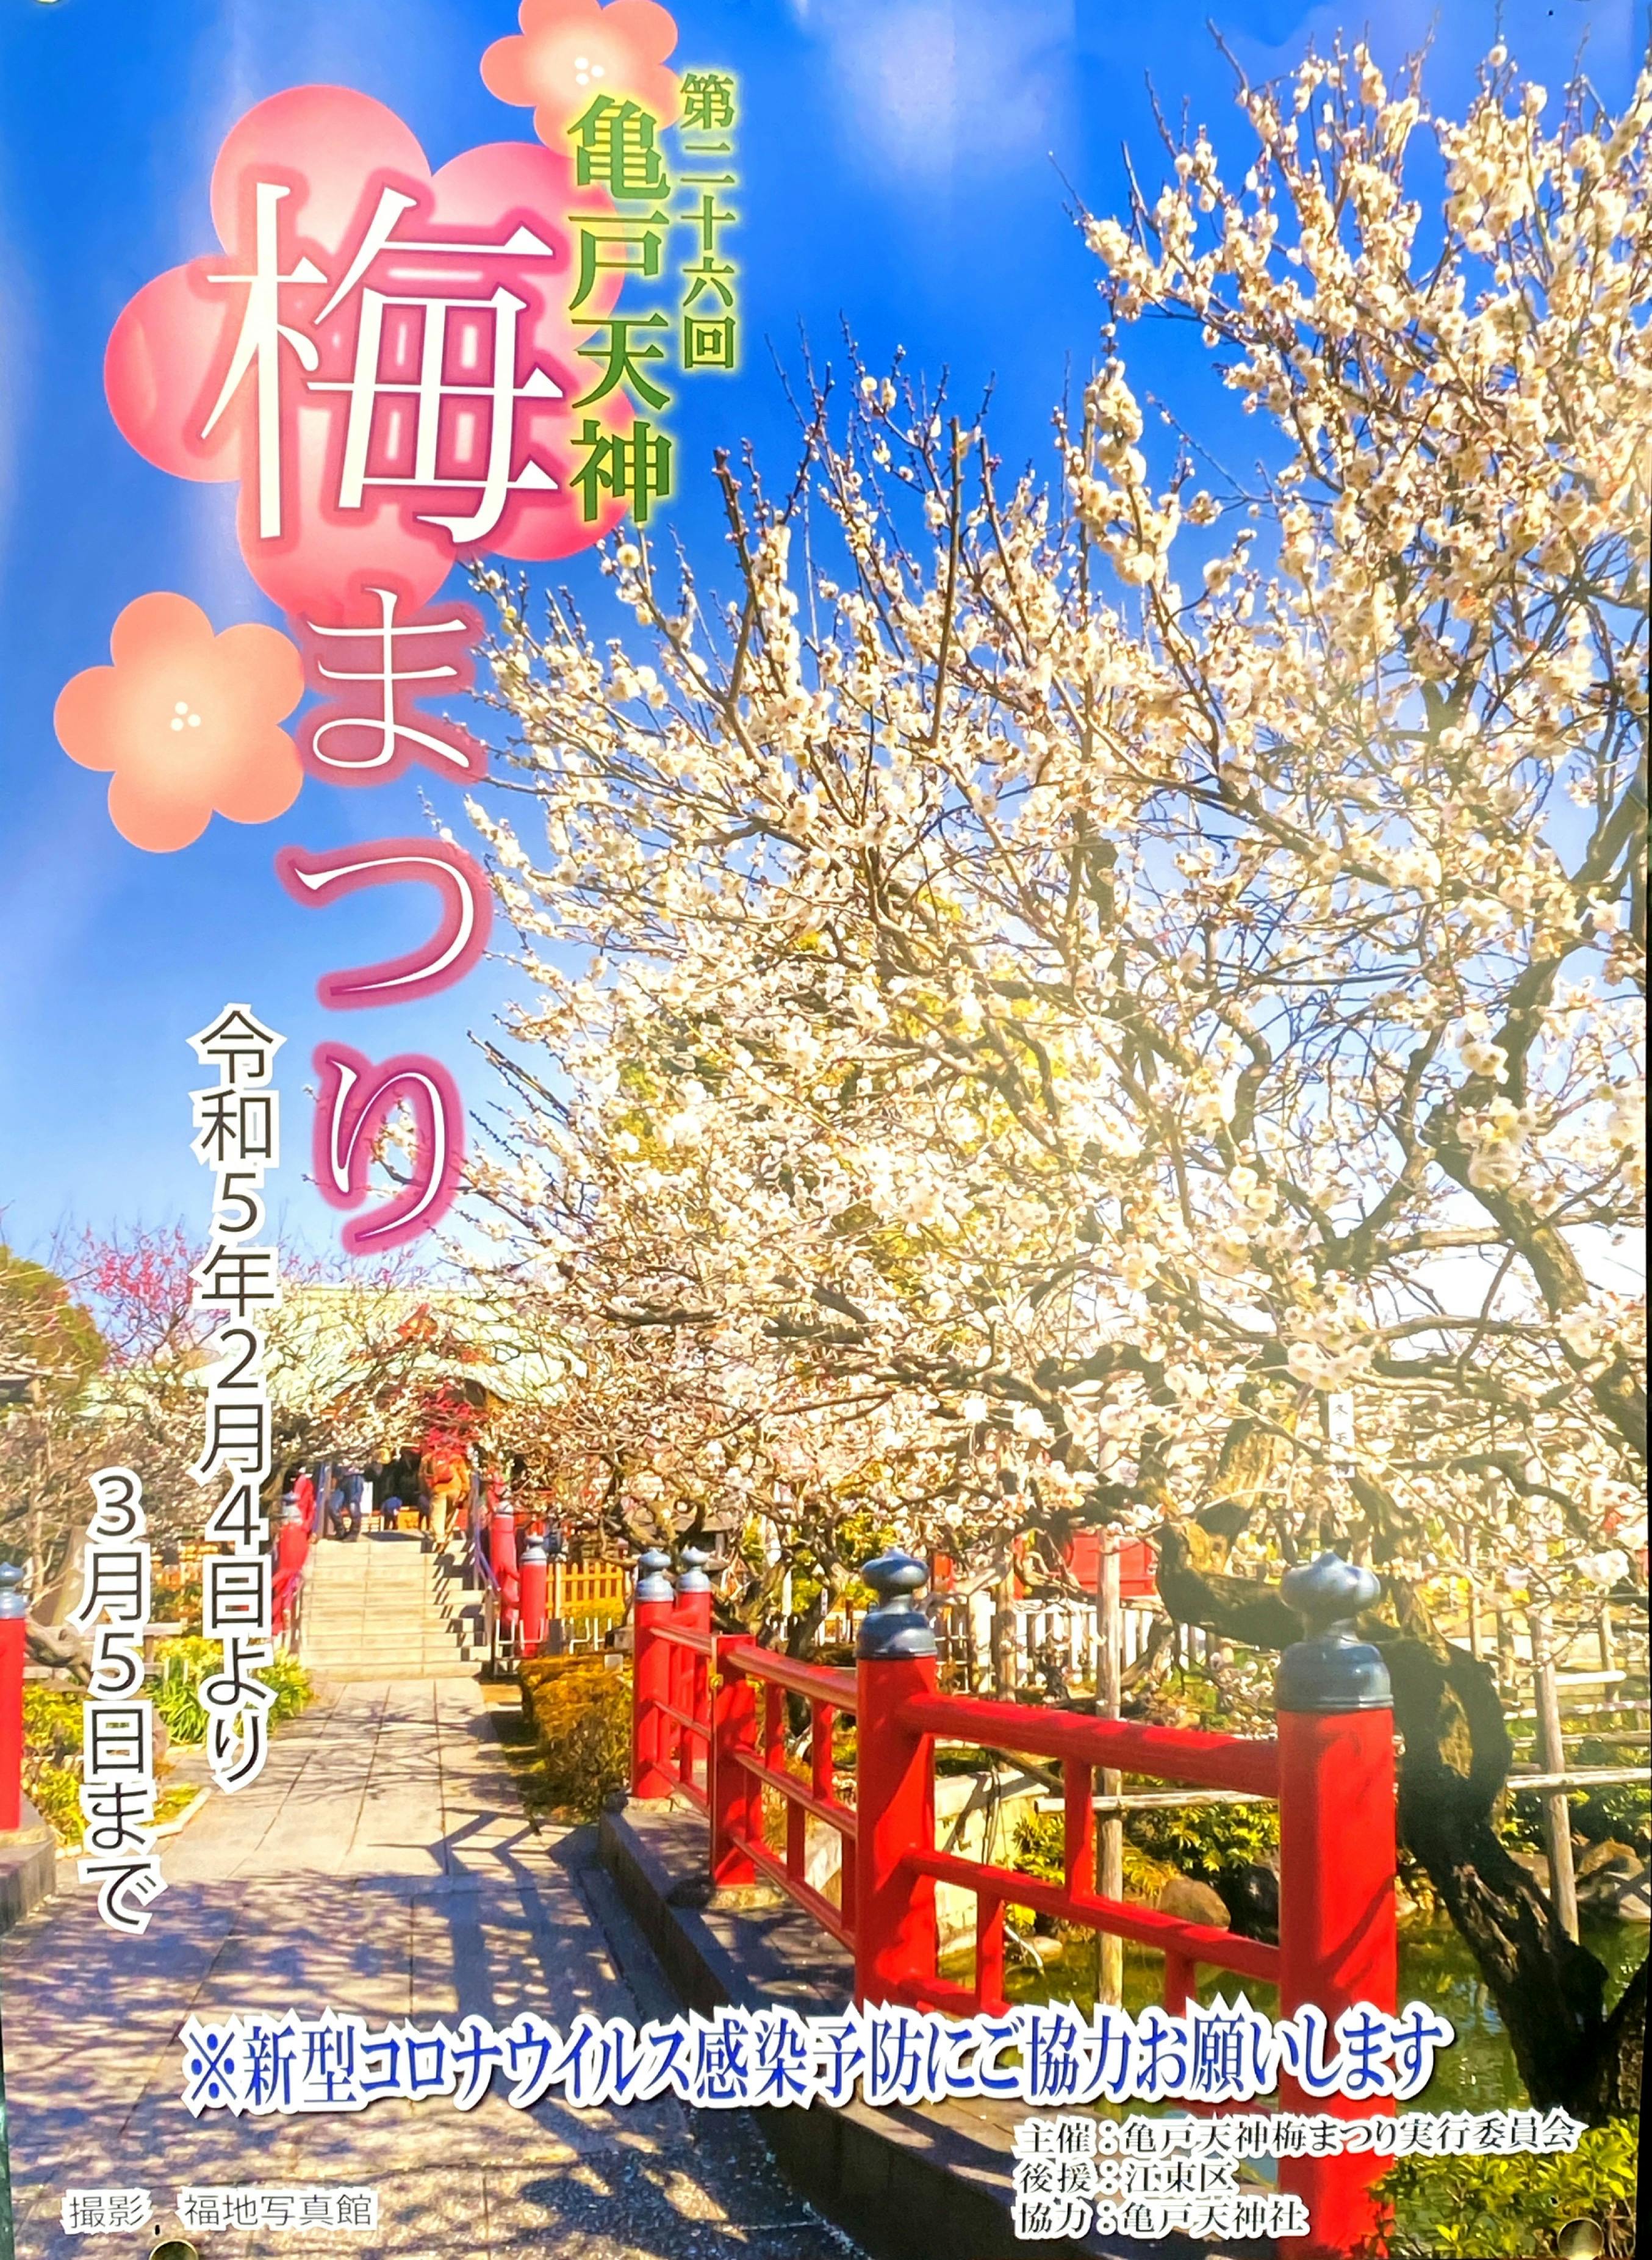 亀戸天神梅まつり 2022年2月4日(土)から3月5日(日)まで、東京・江東区の亀戸天神で「第26回 梅まつり」が開催されます。												